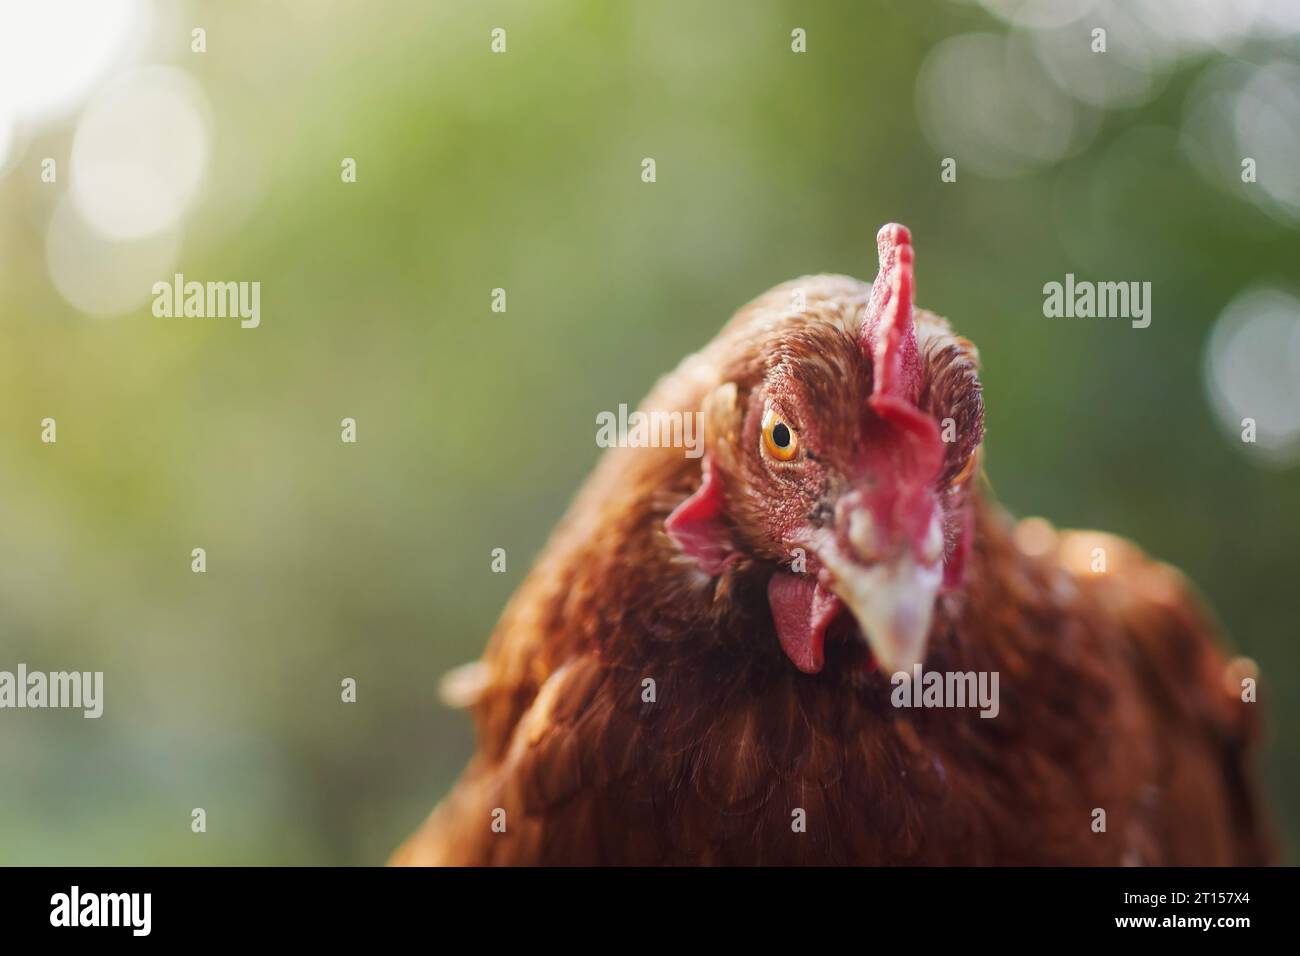 Ritratto di una gallina curiosa che guarda la fotocamera. Messa a fuoco selettiva rispetto al naturale verde per lo spazio di copia. Temi del pollame, dell'agricoltura biologica e dell'autosufficienza Foto Stock